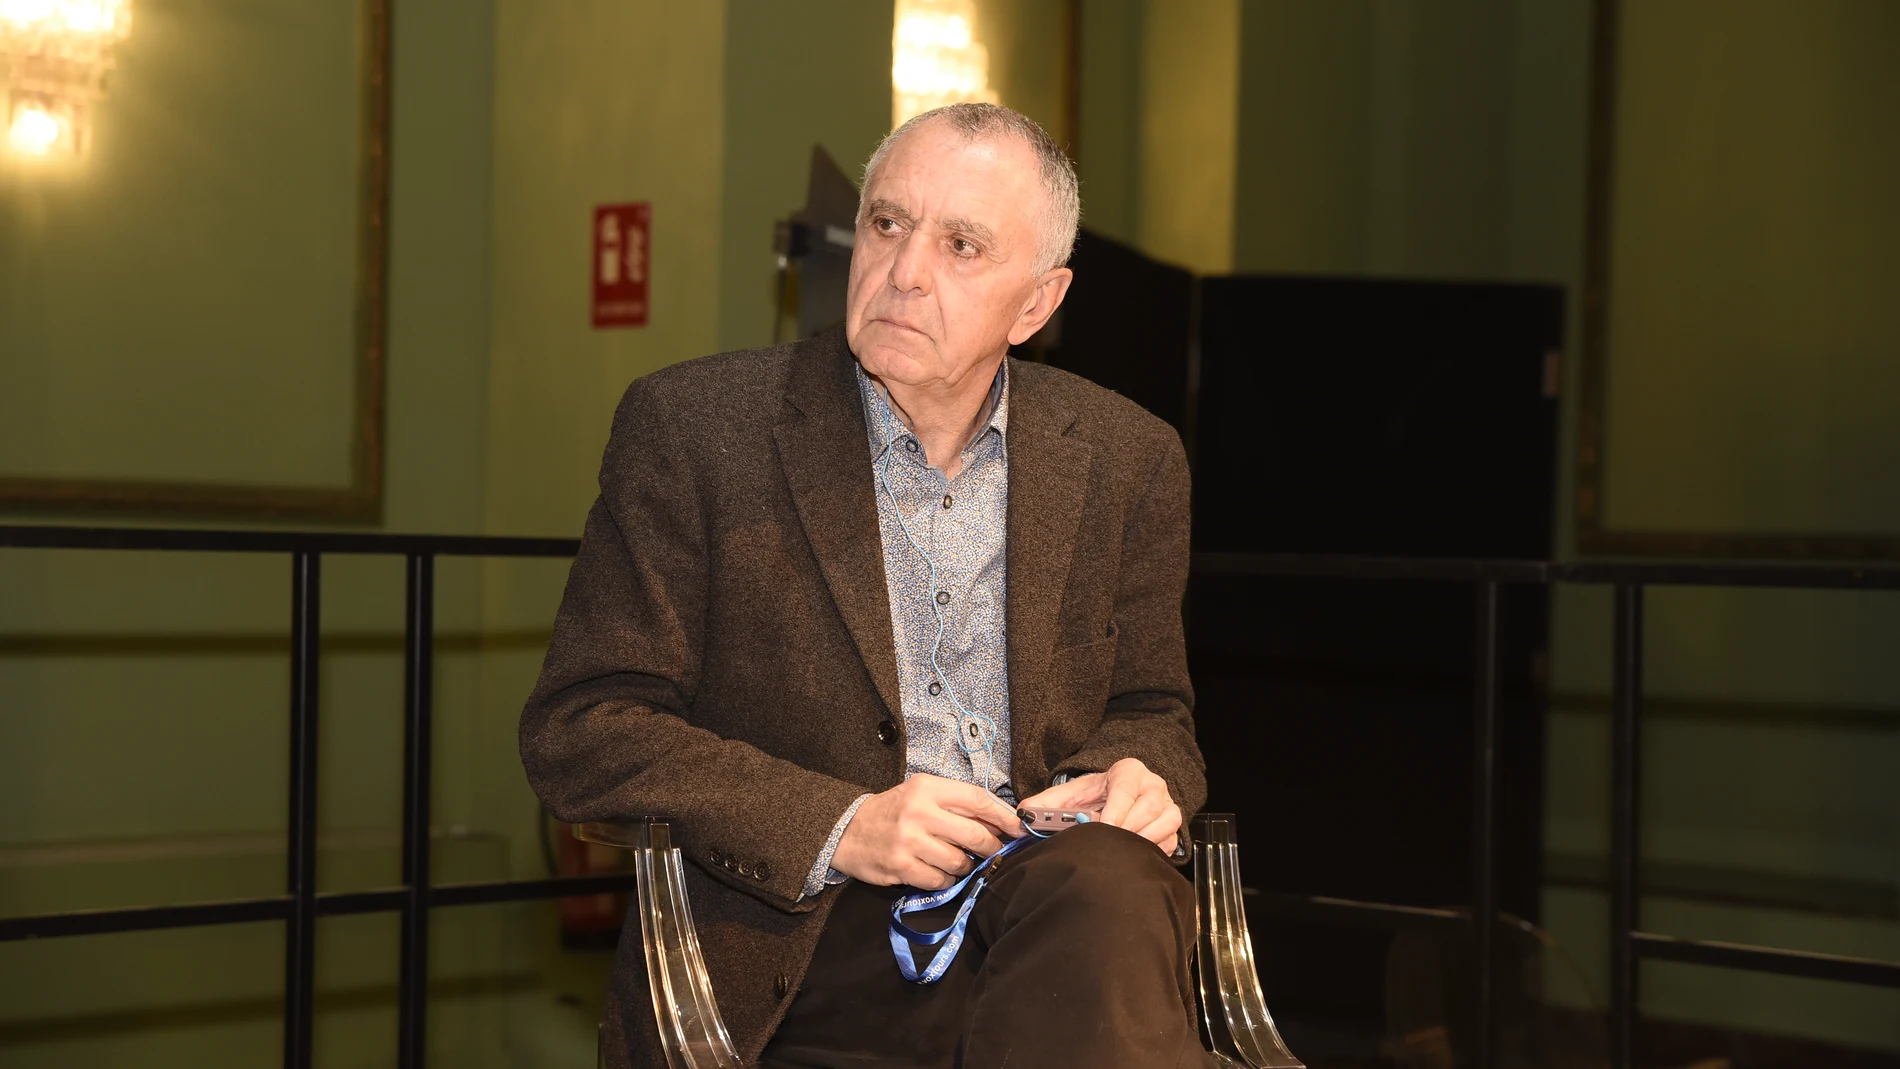 El filósofo francés Gilles Lipovetsky, en el Círculo de Bellas Artes. Cortesía del Institut Français de España / Jorge Zorrilla Pascual